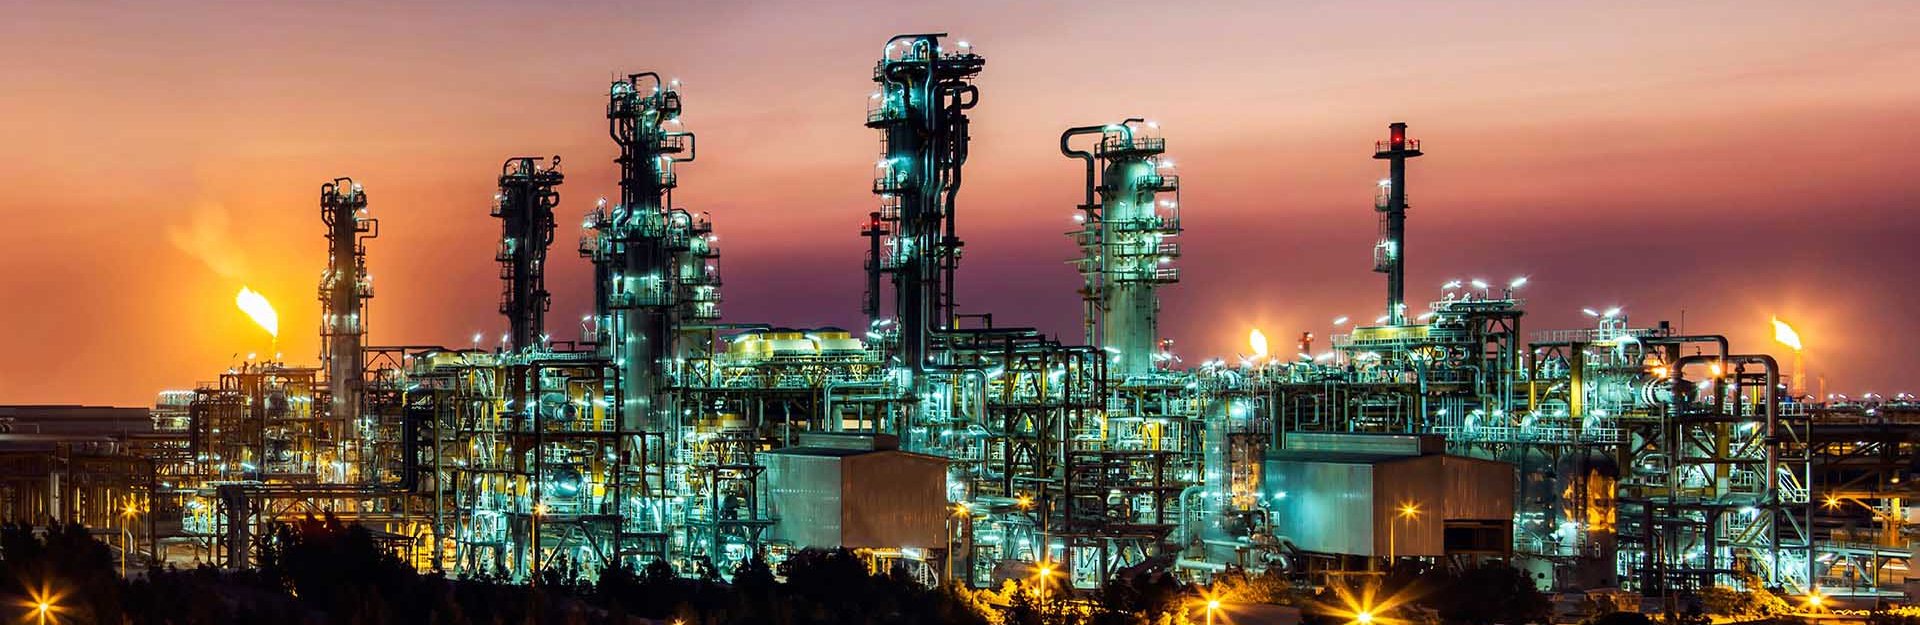 شرکت سازه صنعت سنا فارس: سازنده و تامین کننده تجهیزات ثابت صنایع نفت، گاز، پتروشیمی و فولاد